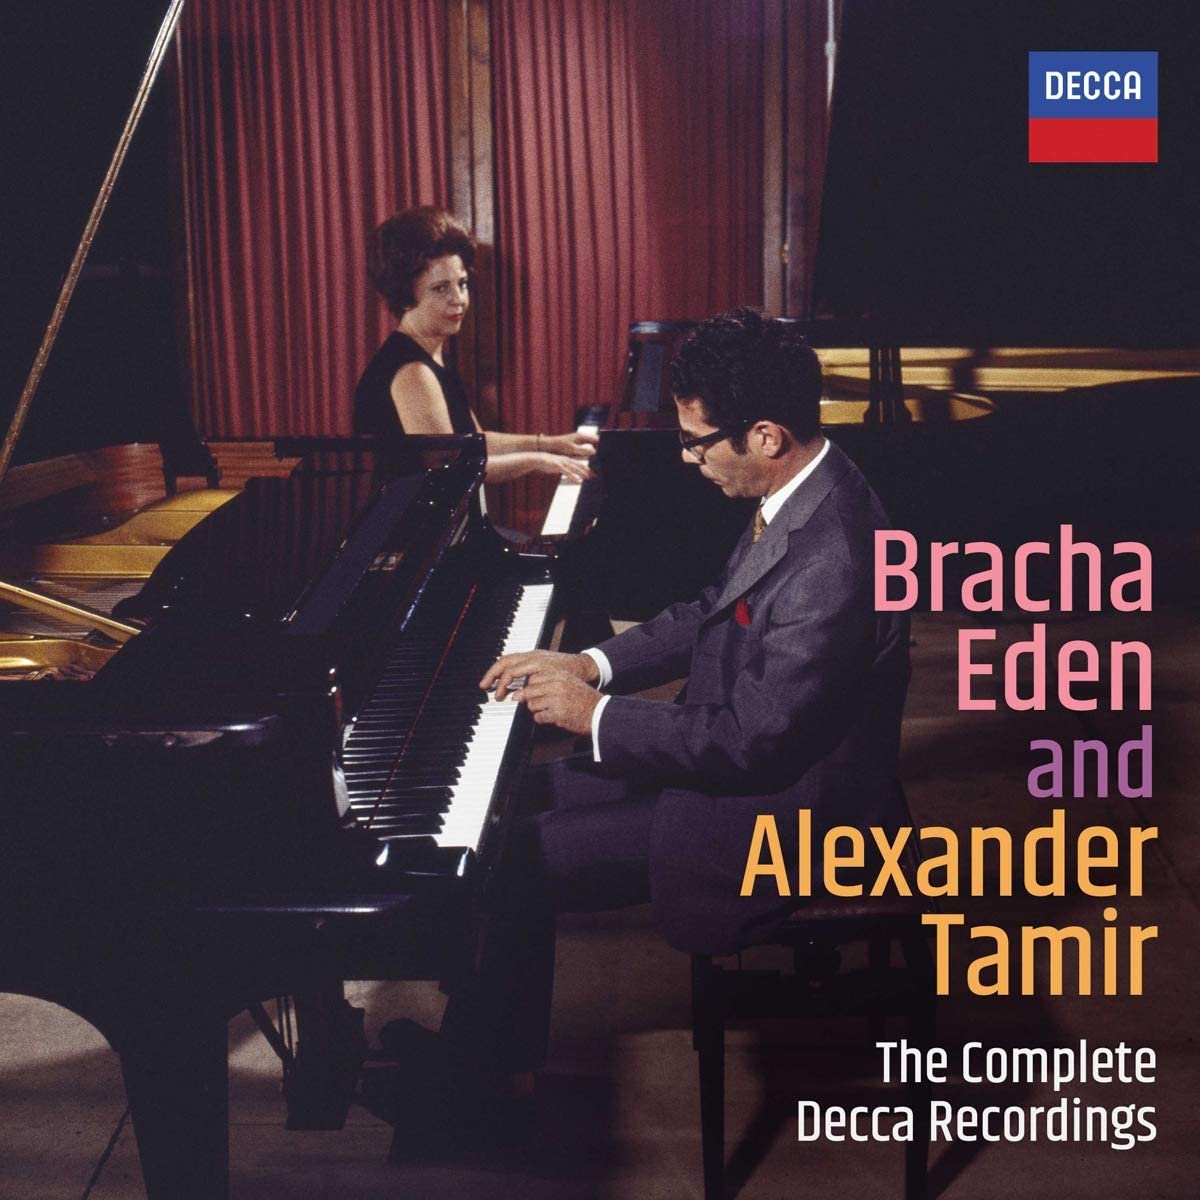 Complete Decca Recordings | Bracha Eden, Alexander Tamir image0